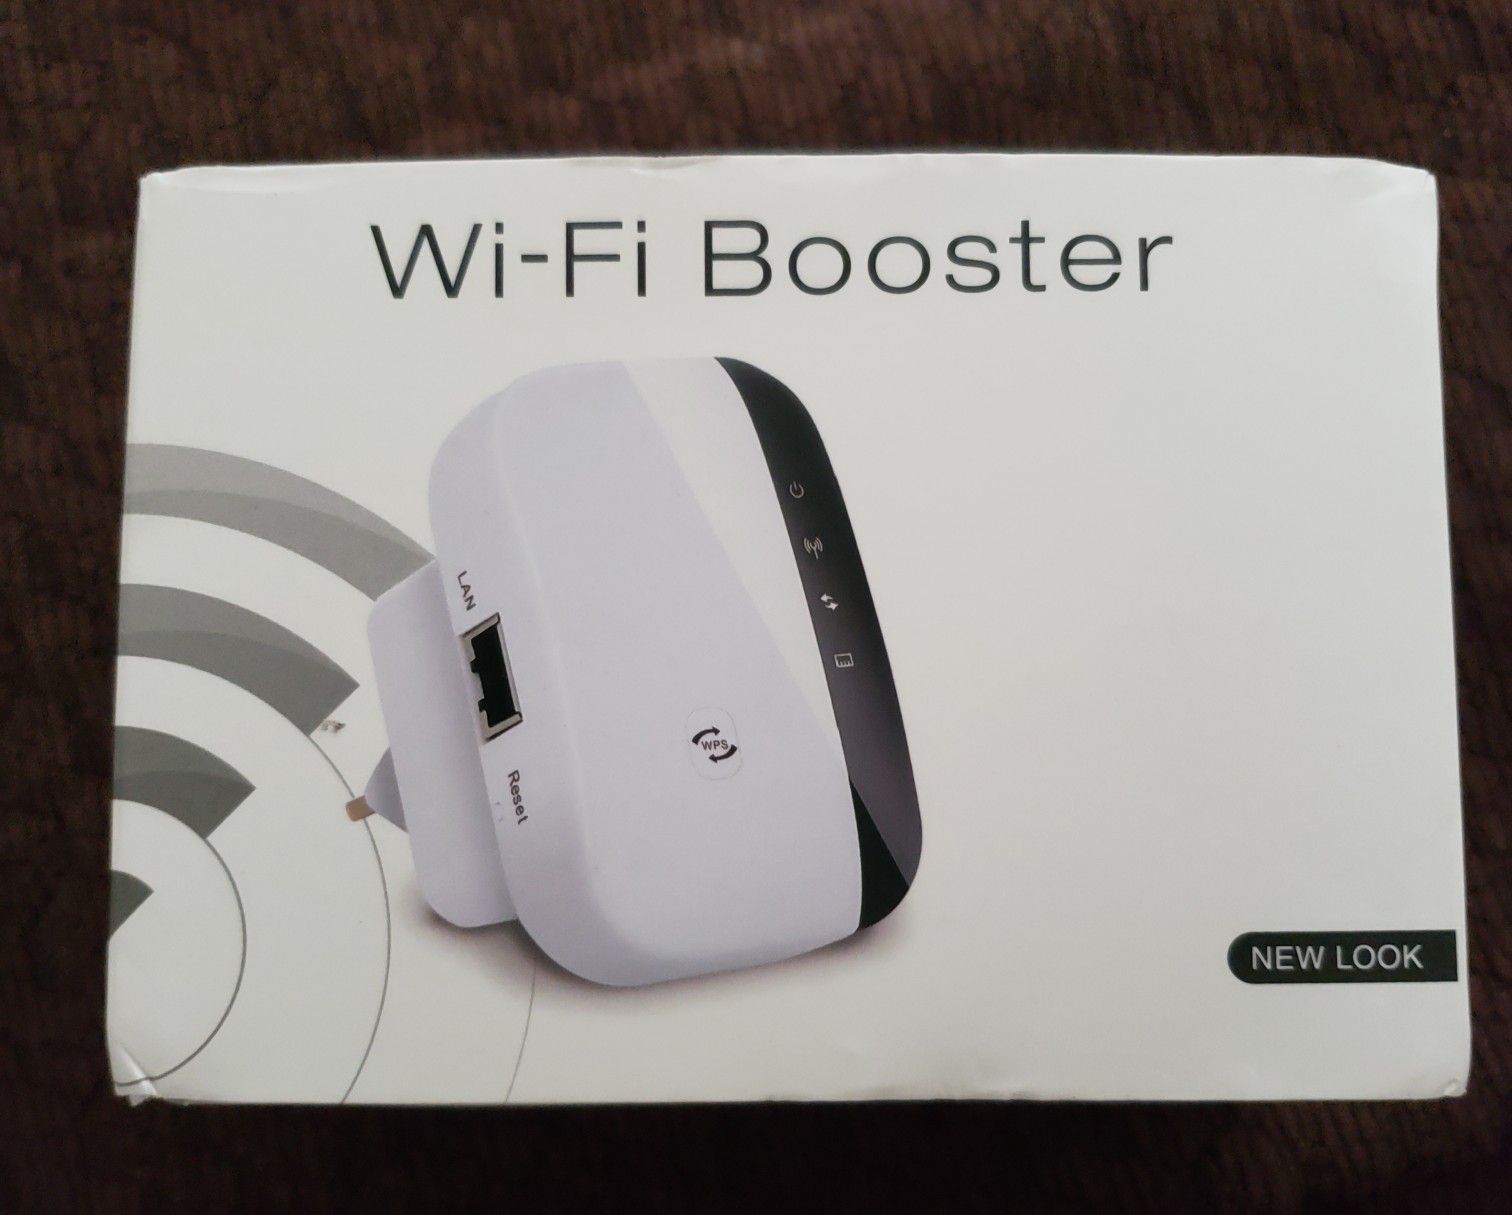 Wi-Fi Booster